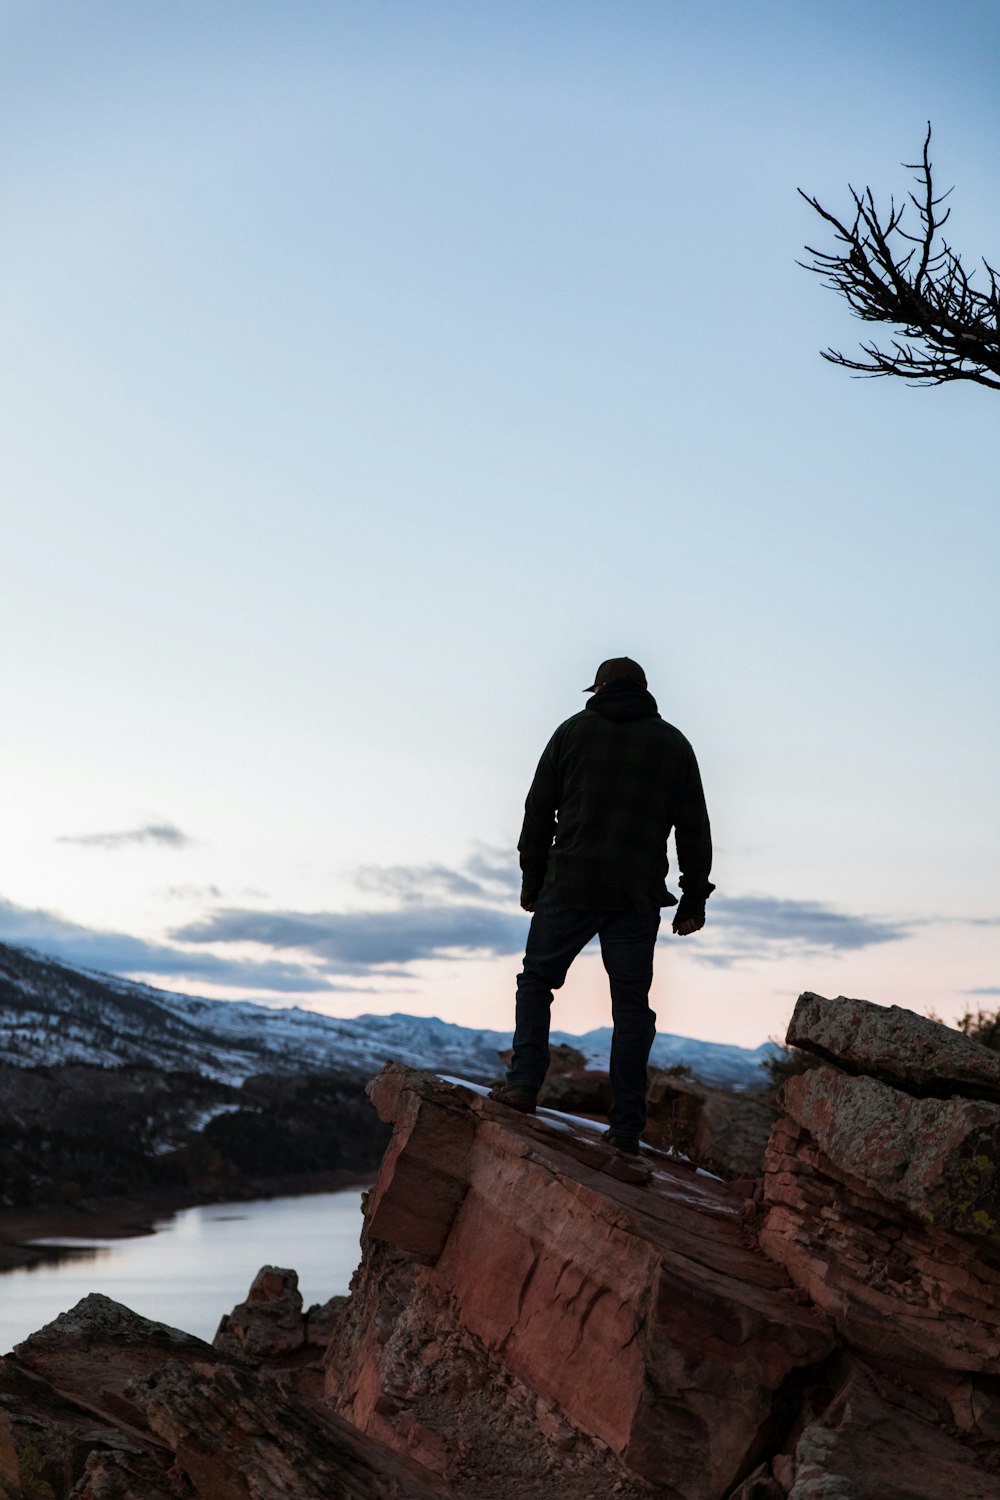 man standing on rock edge overlooking valley